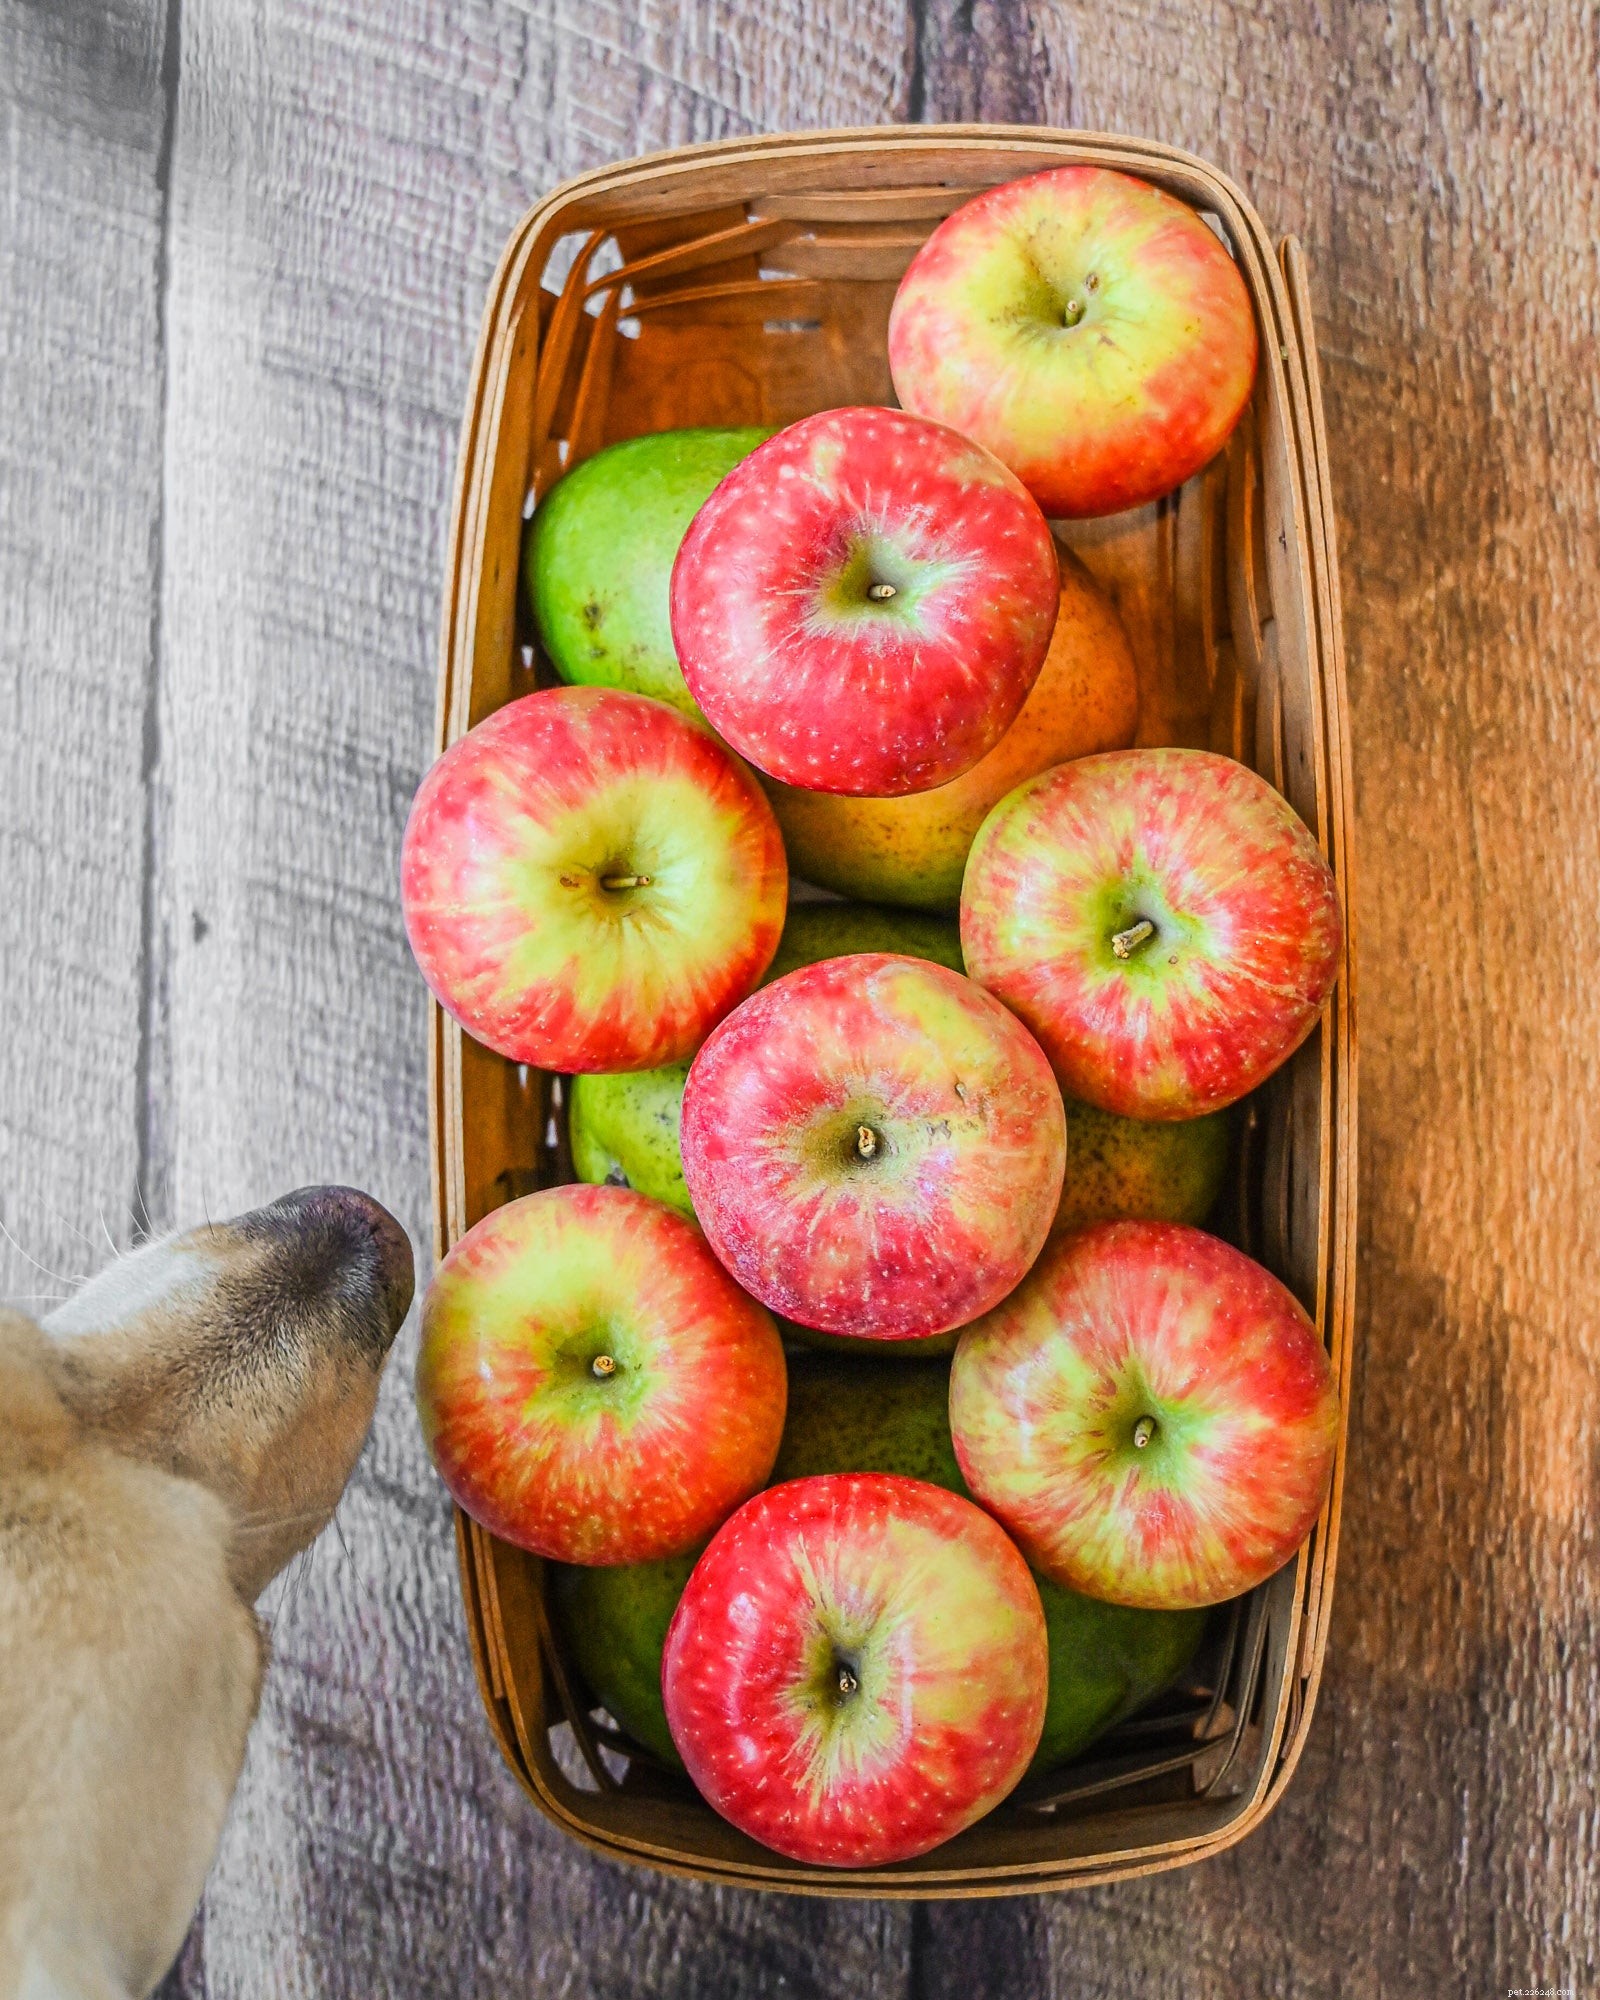 Kan min hund äta äpplen?